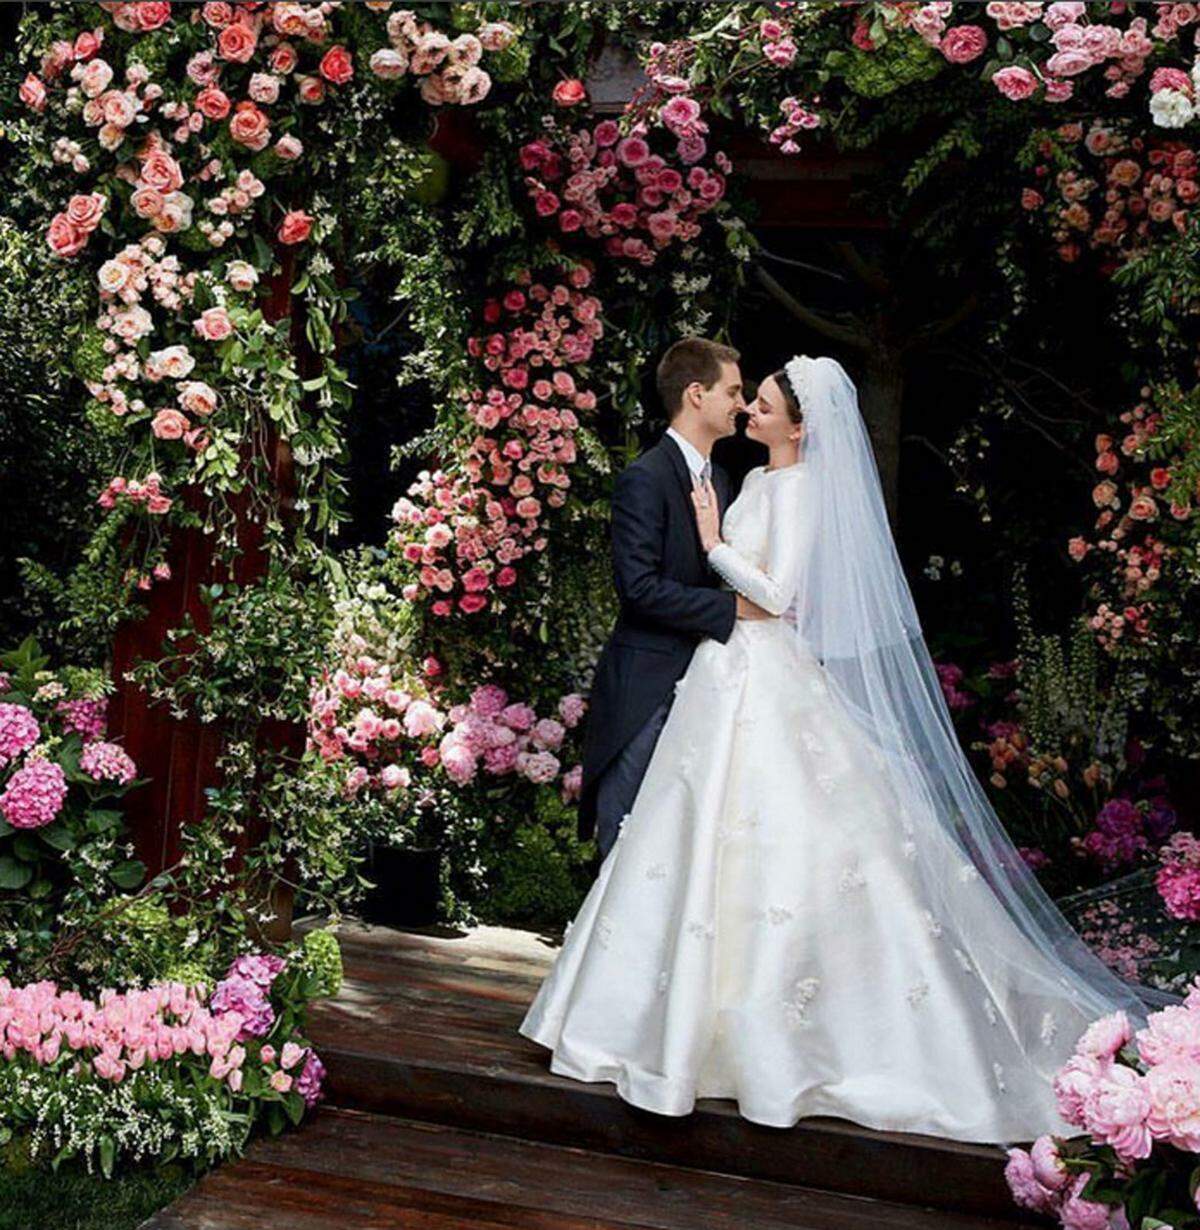 Andere Paare geben mehr Einblick in ihre Hochzeit. Bereits im Mai heiratete Model Miranda Kerr Snapchat-Gründer Evan Spiegel. Die Bilder des Brautkleids wurden in der amerikanischen "Vogue" veröffentlicht.